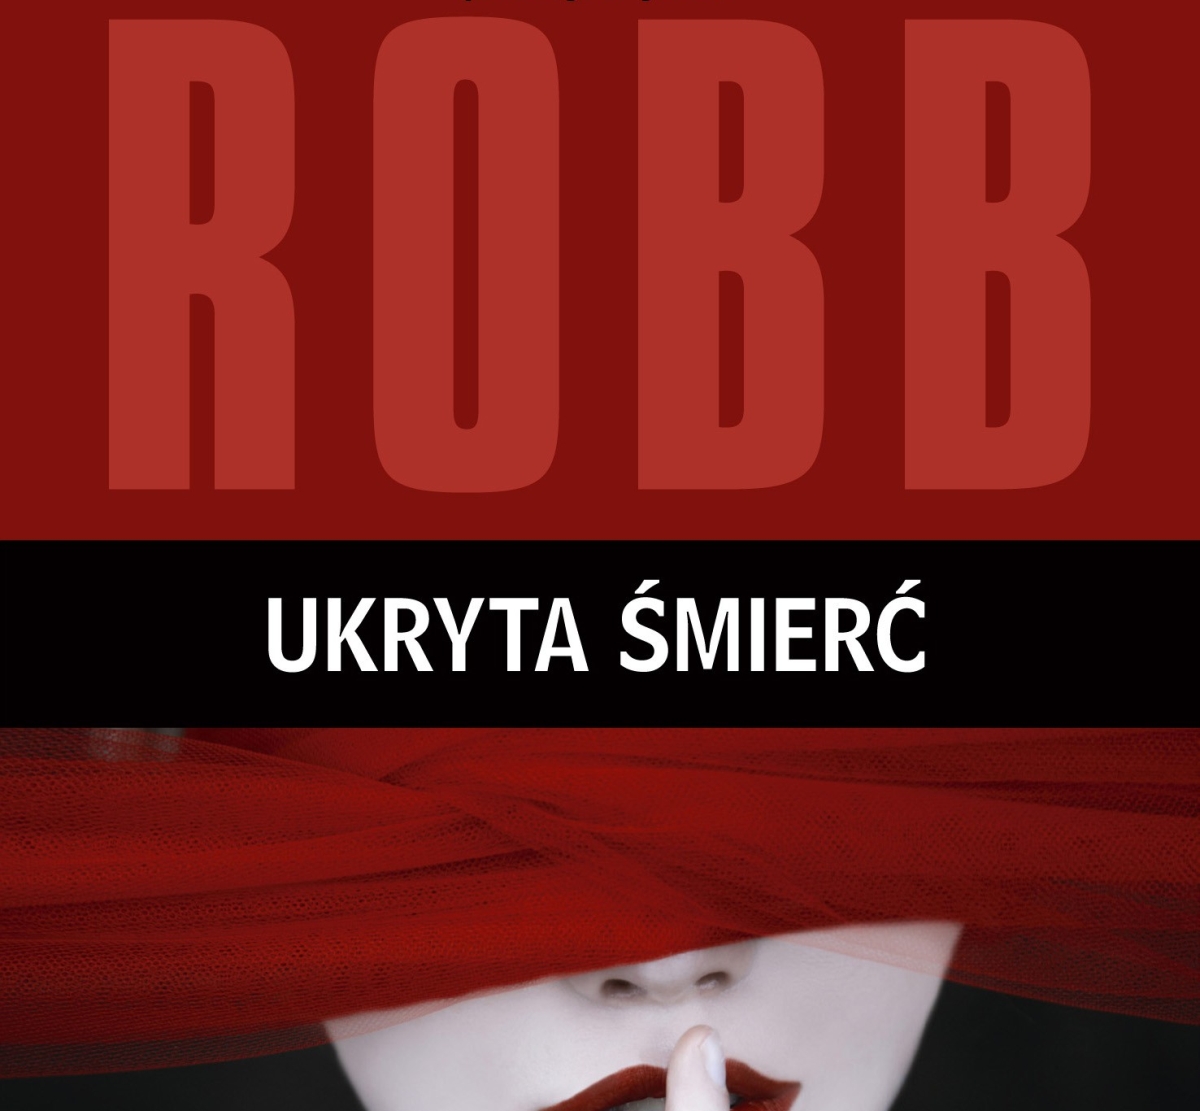 J.D. Robb, "Ukryta śmierć" - nowy kryminał Nory Roberts już w księgarniach! 